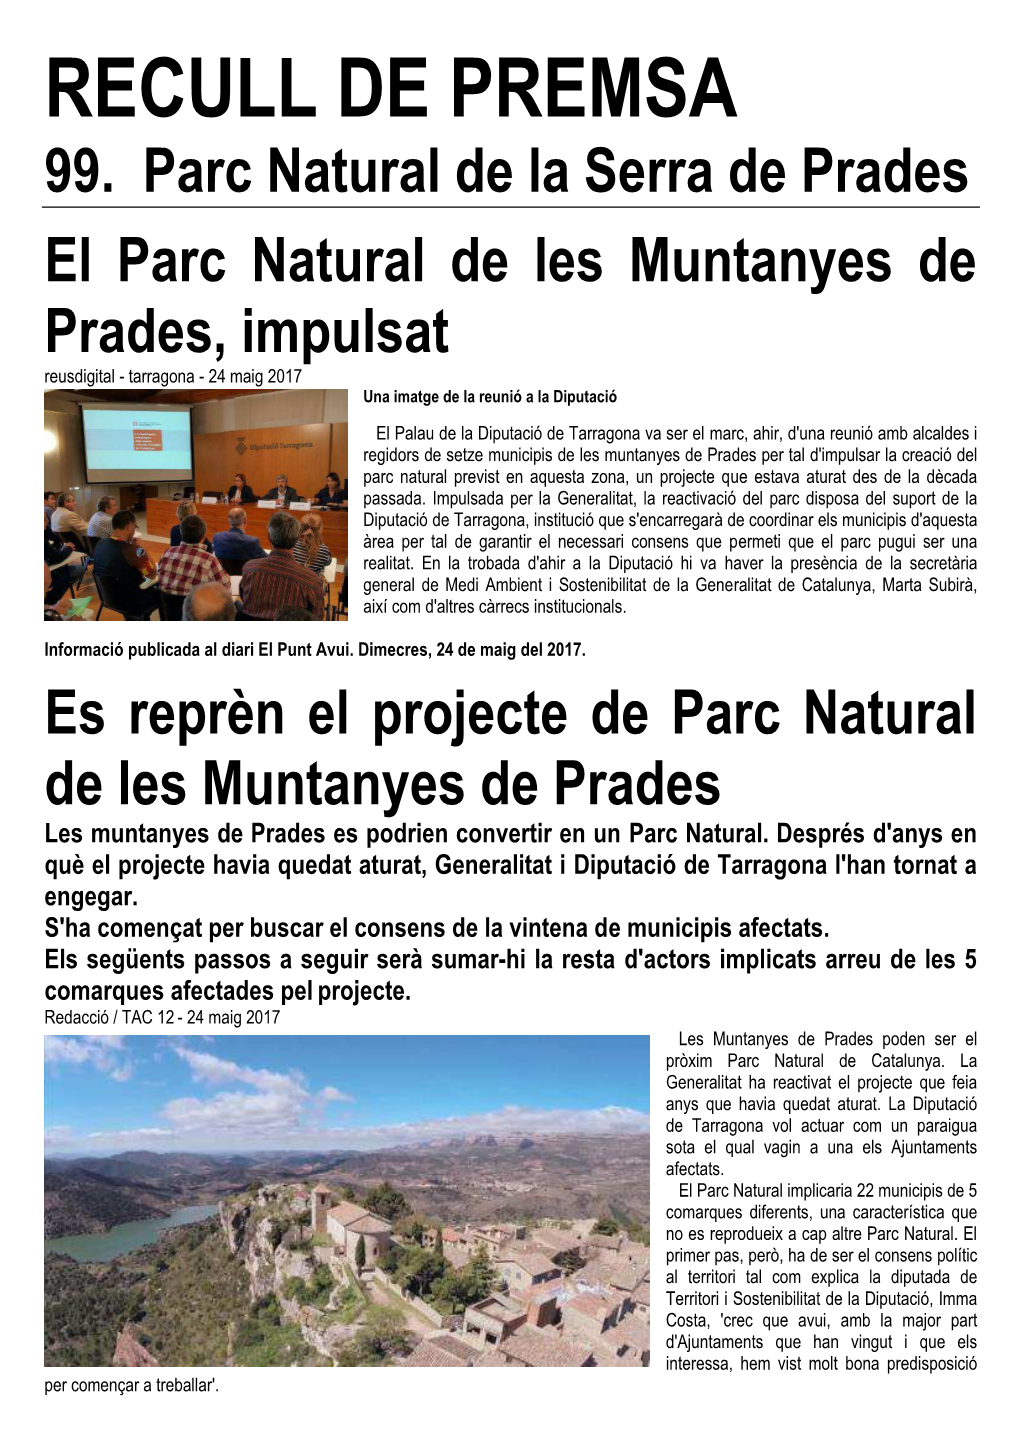 99. RECULL DE PREMSA. Parc Natural De Les Muntanyes De Prades